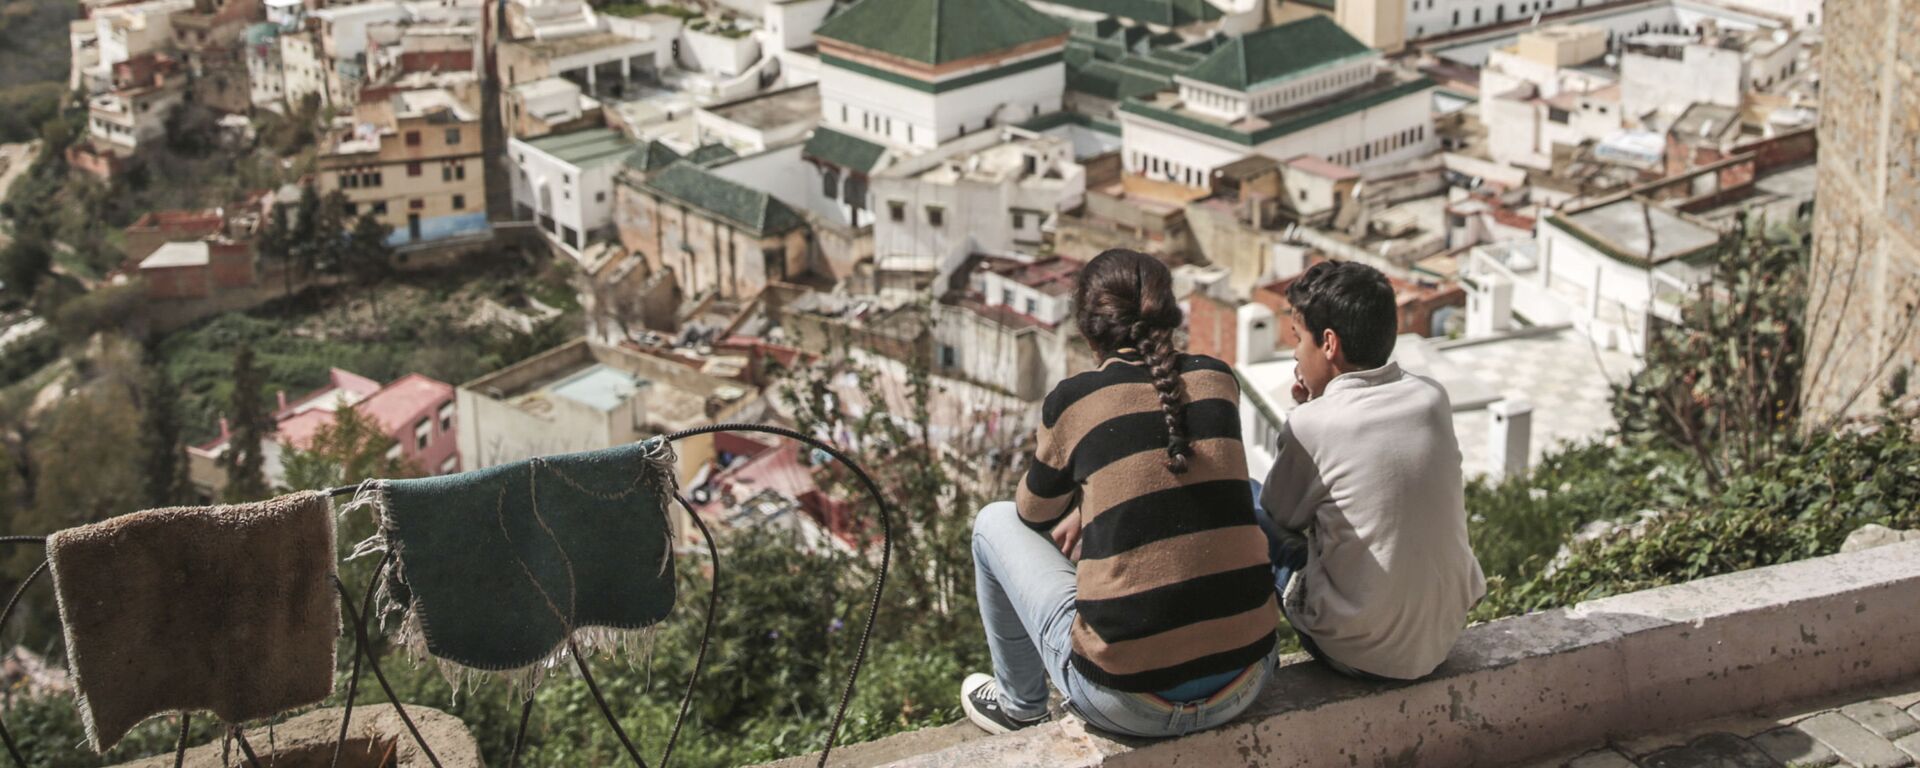 أطفال يتأملون قرية مولاي إدريس من أعلى سطح منزل، بالقرب من مكناس، المغرب 24 فبراير/ شباط 2017 - سبوتنيك عربي, 1920, 29.01.2021